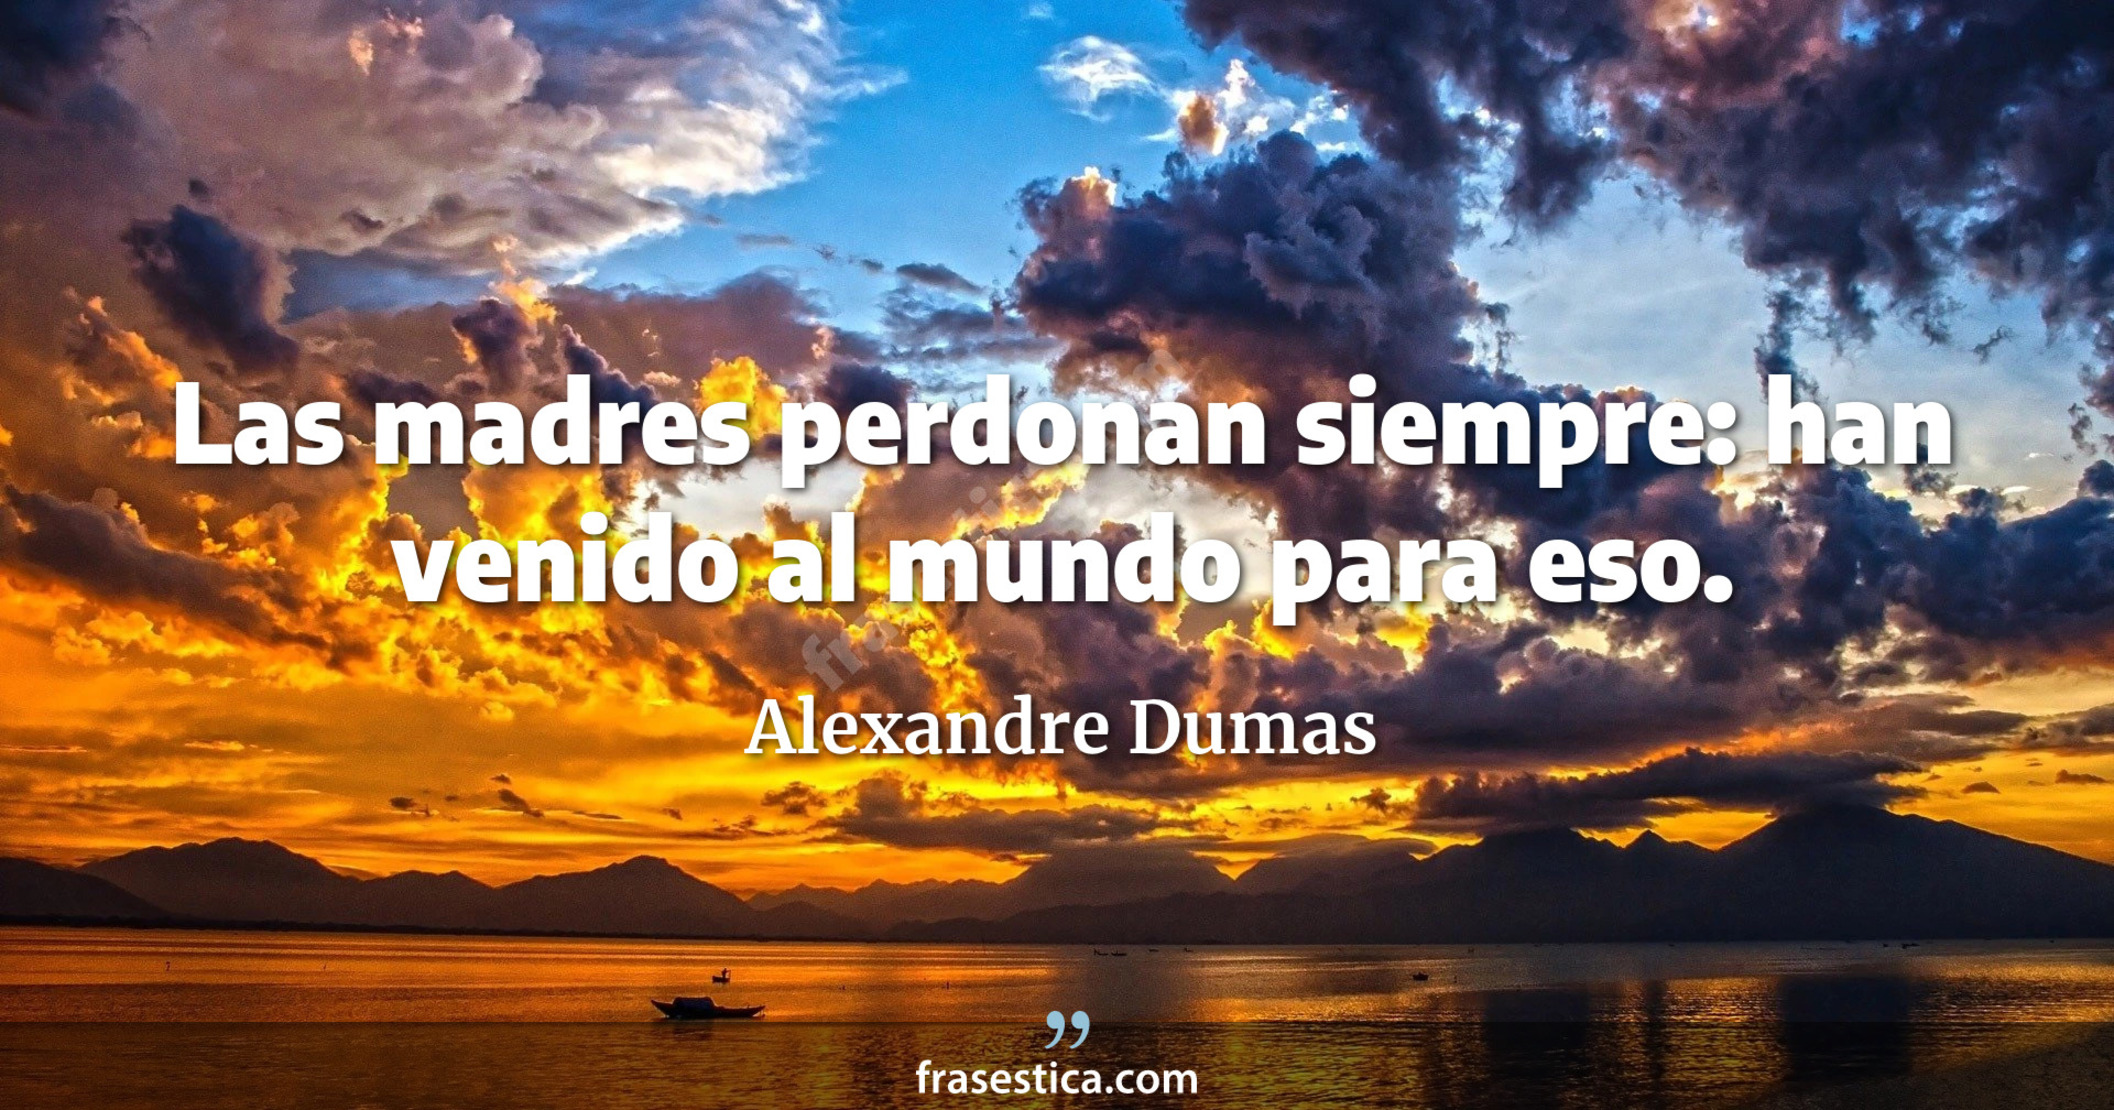 Las madres perdonan siempre: han venido al mundo para eso. - Alexandre Dumas